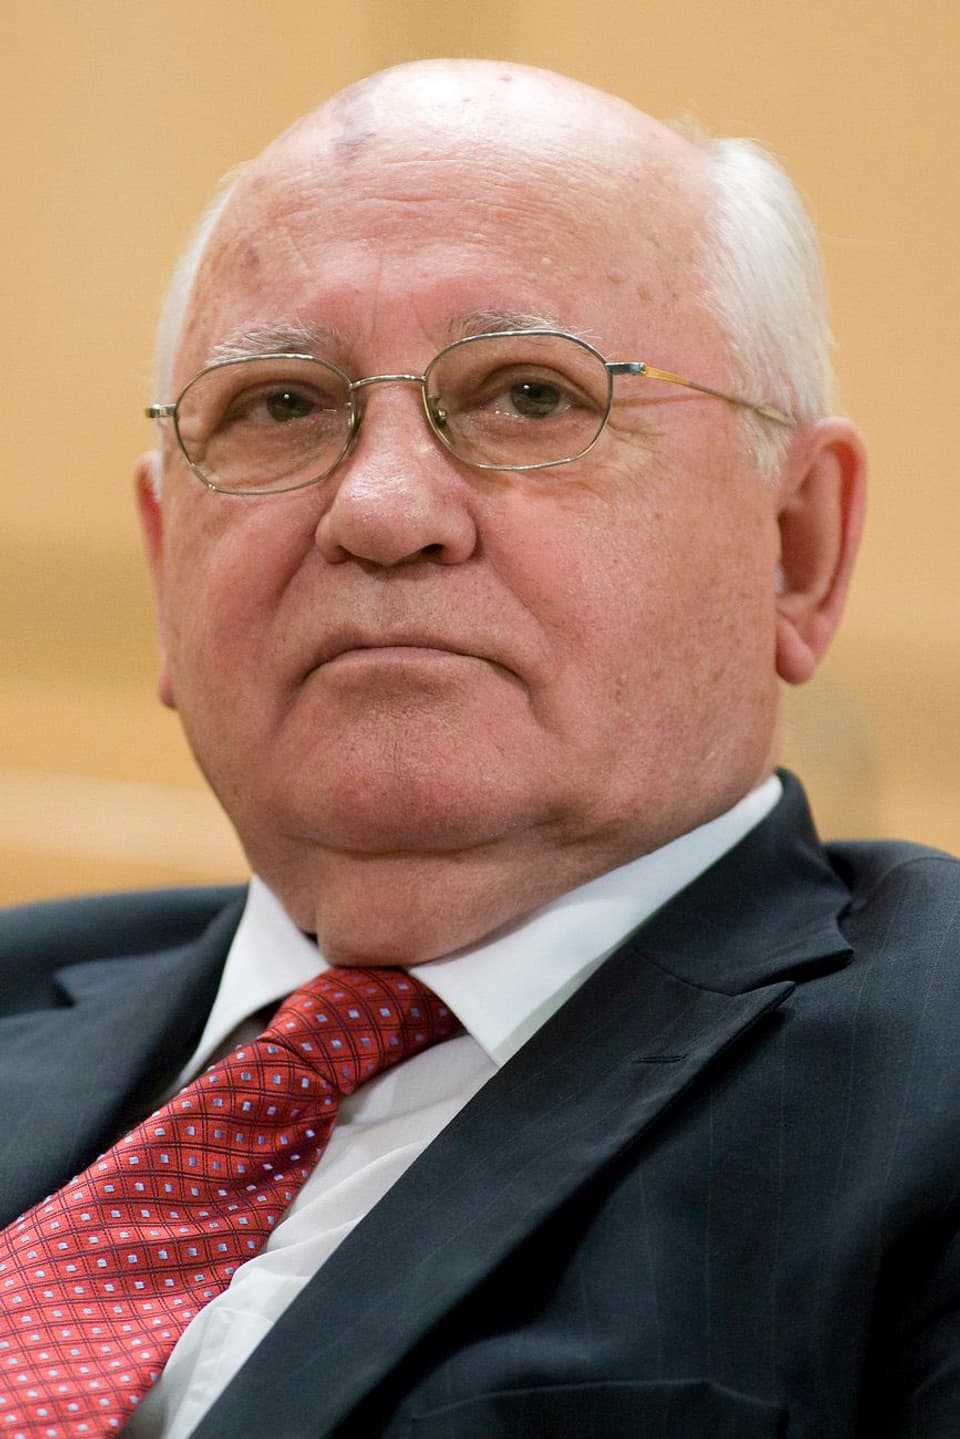 Gorbatschwo an einem Anlass der UNO in Genf 2009. (keystone)